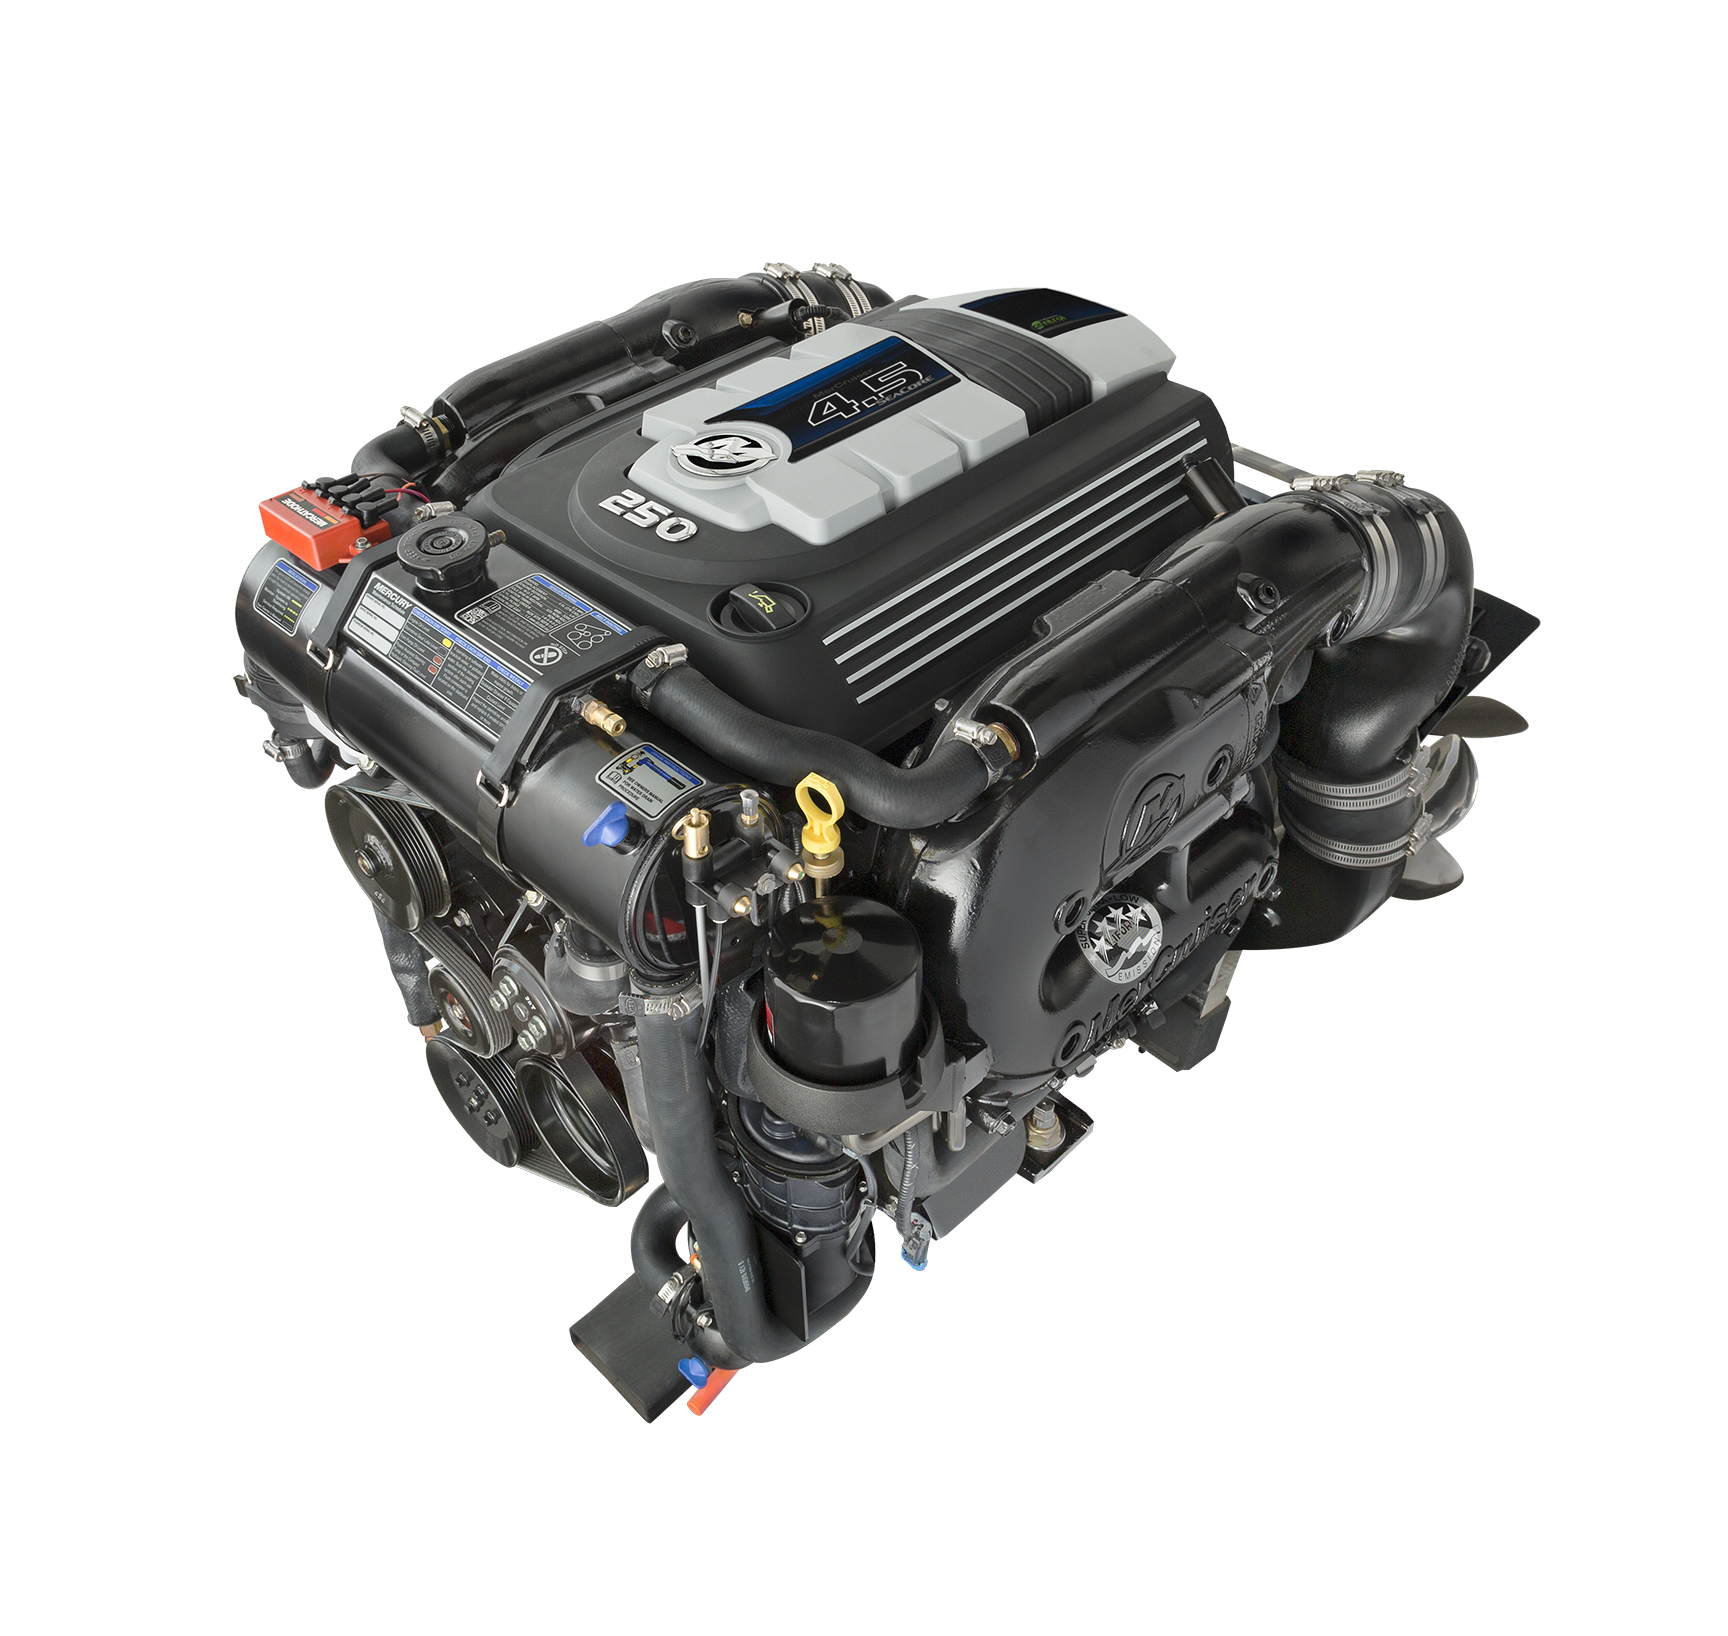 New MerCruiser 4.5L V6 Promises V8 Performance